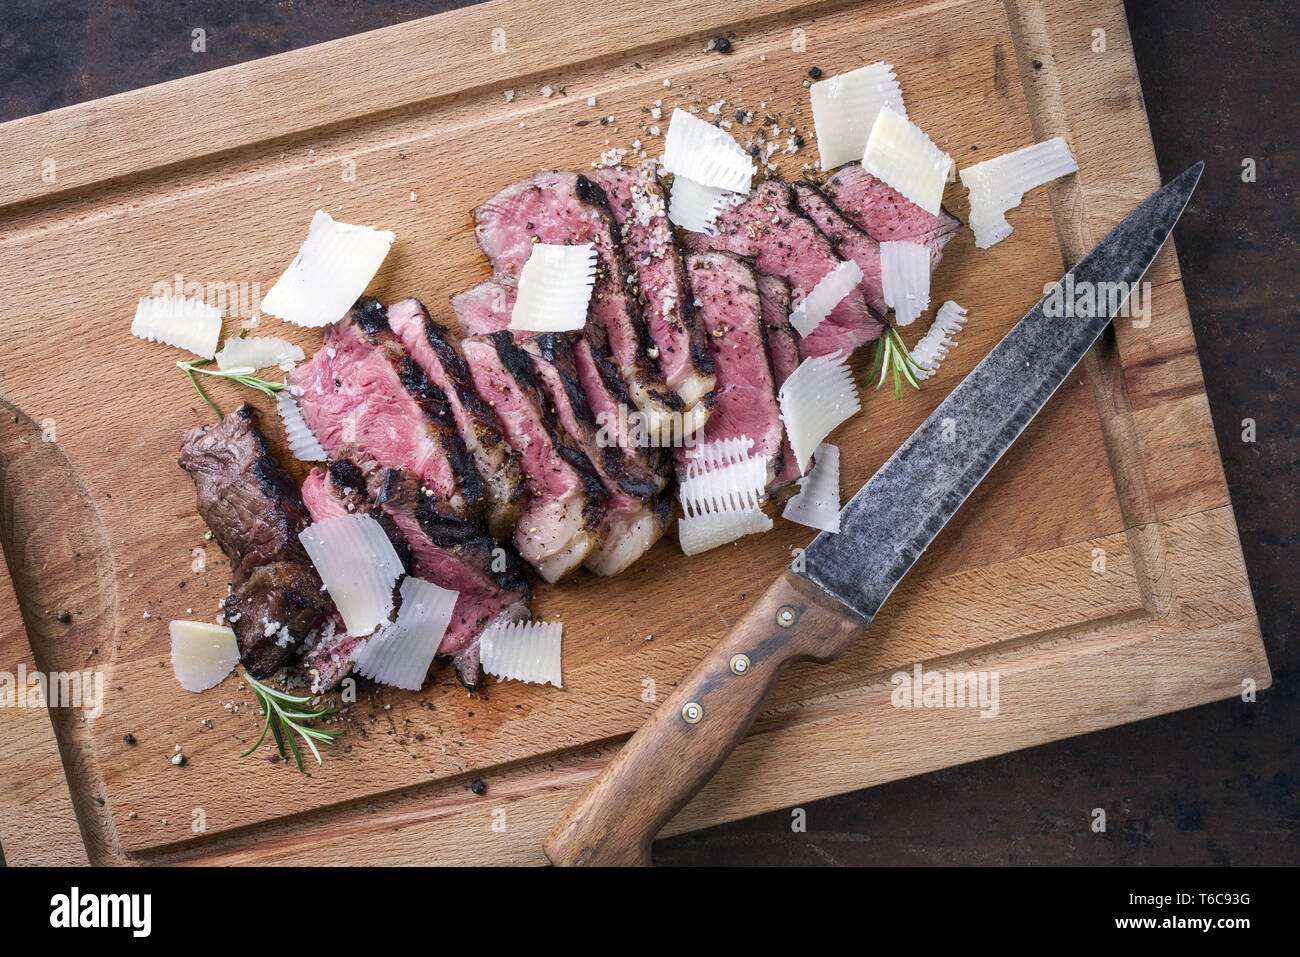 La cuisine italienne traditionnelle avec du parmesan Steak Tagliata comme close-up on cutting board Banque D'Images